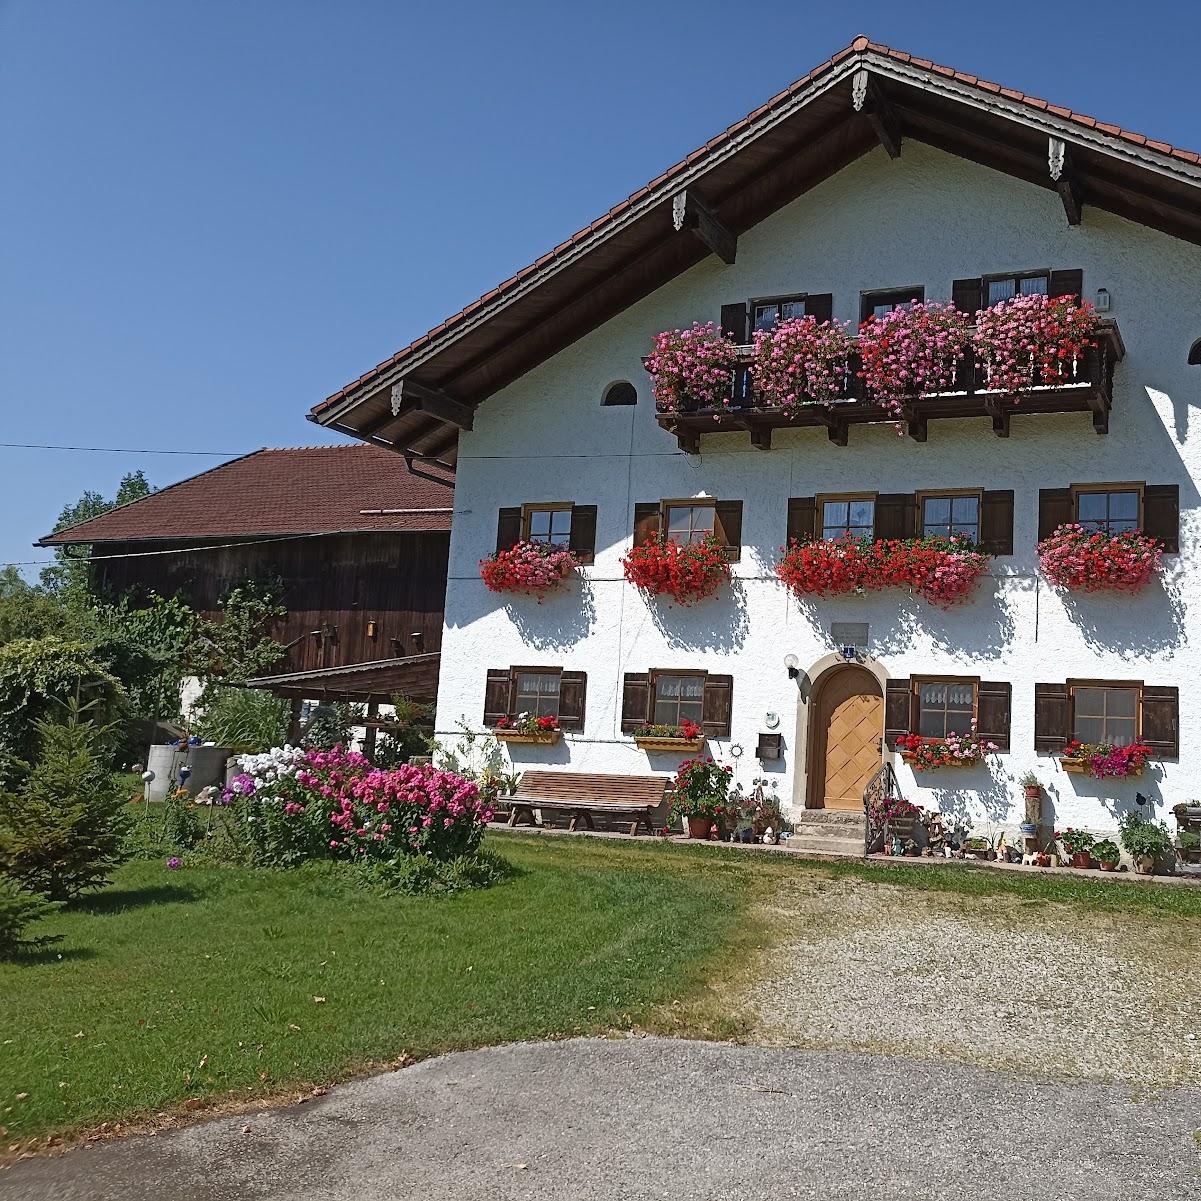 Restaurant "Oederhof" in Saaldorf-Surheim